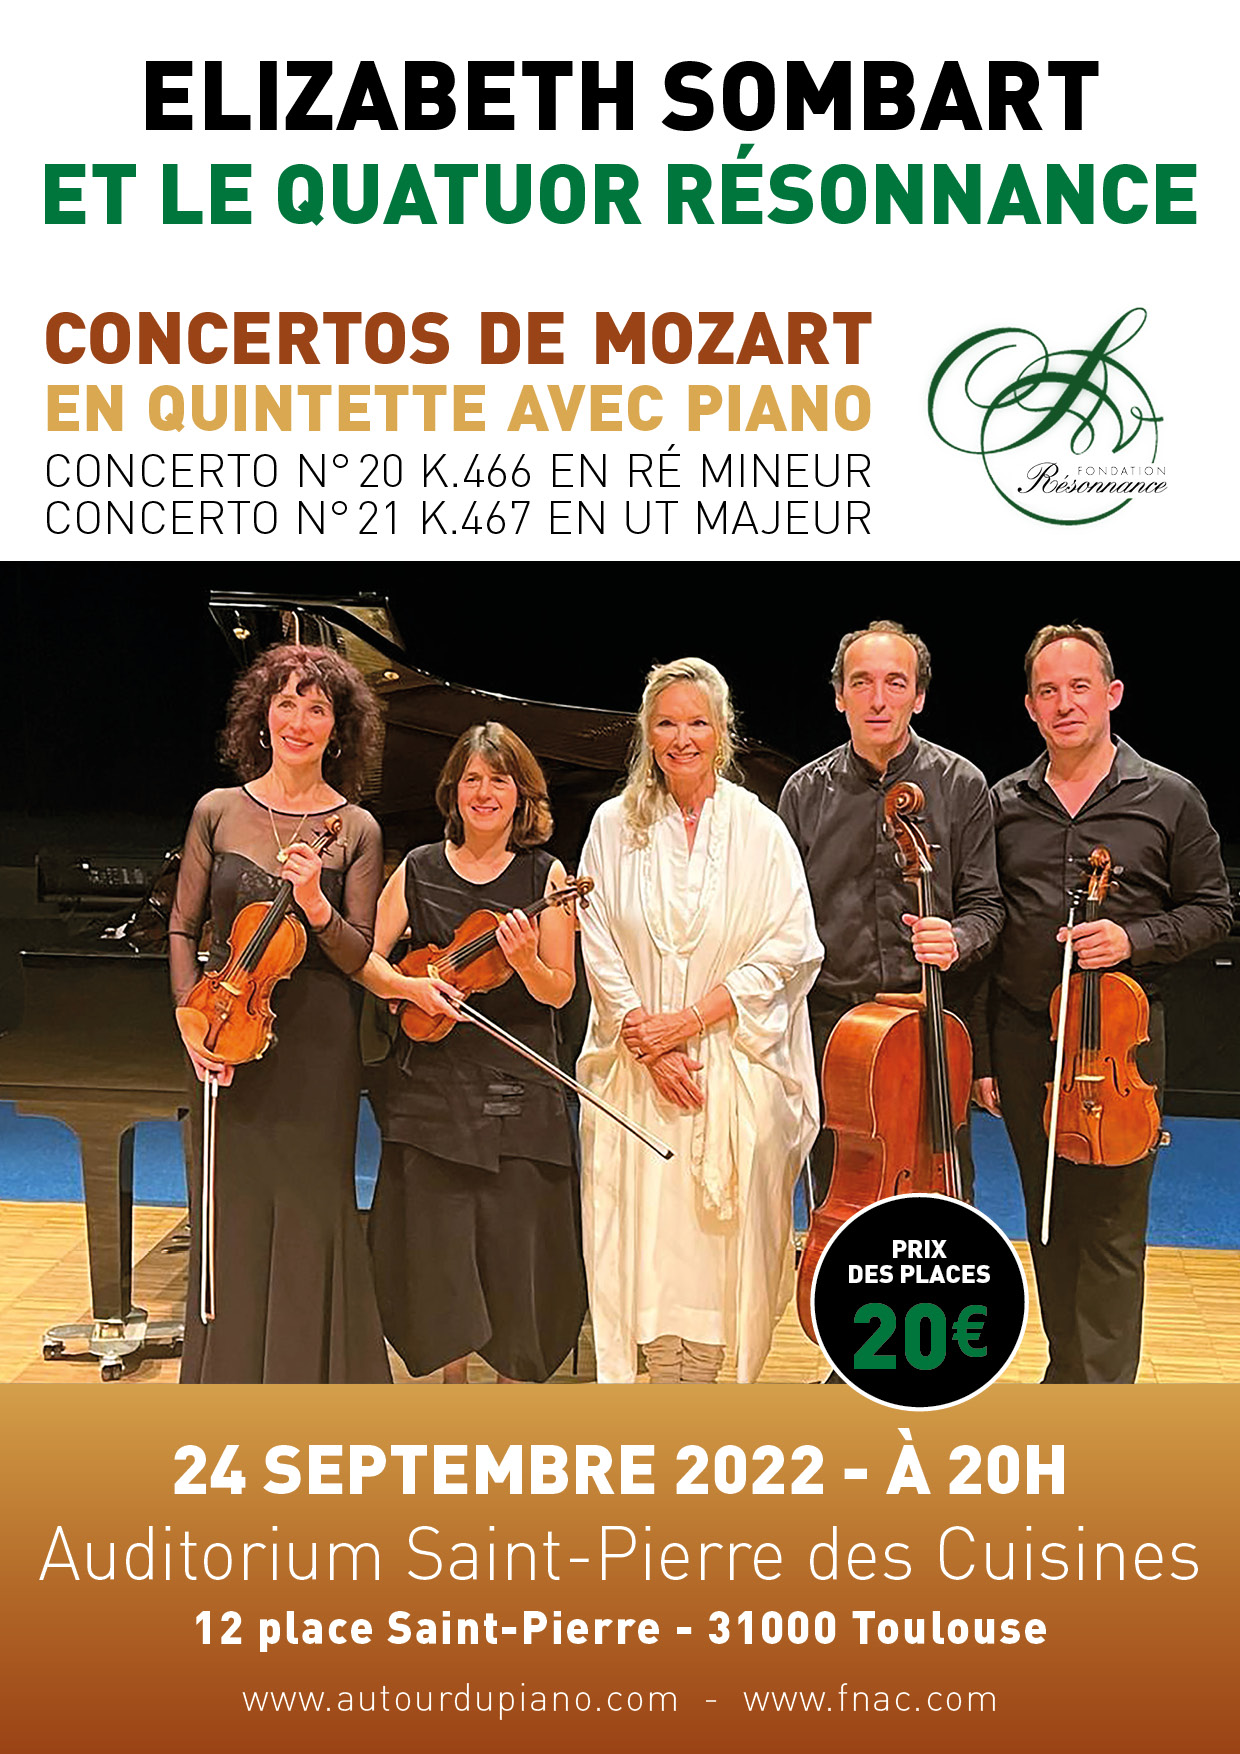 Concertos de Mozart avec Elizabeth Sombart et le Quatuor Résonnance